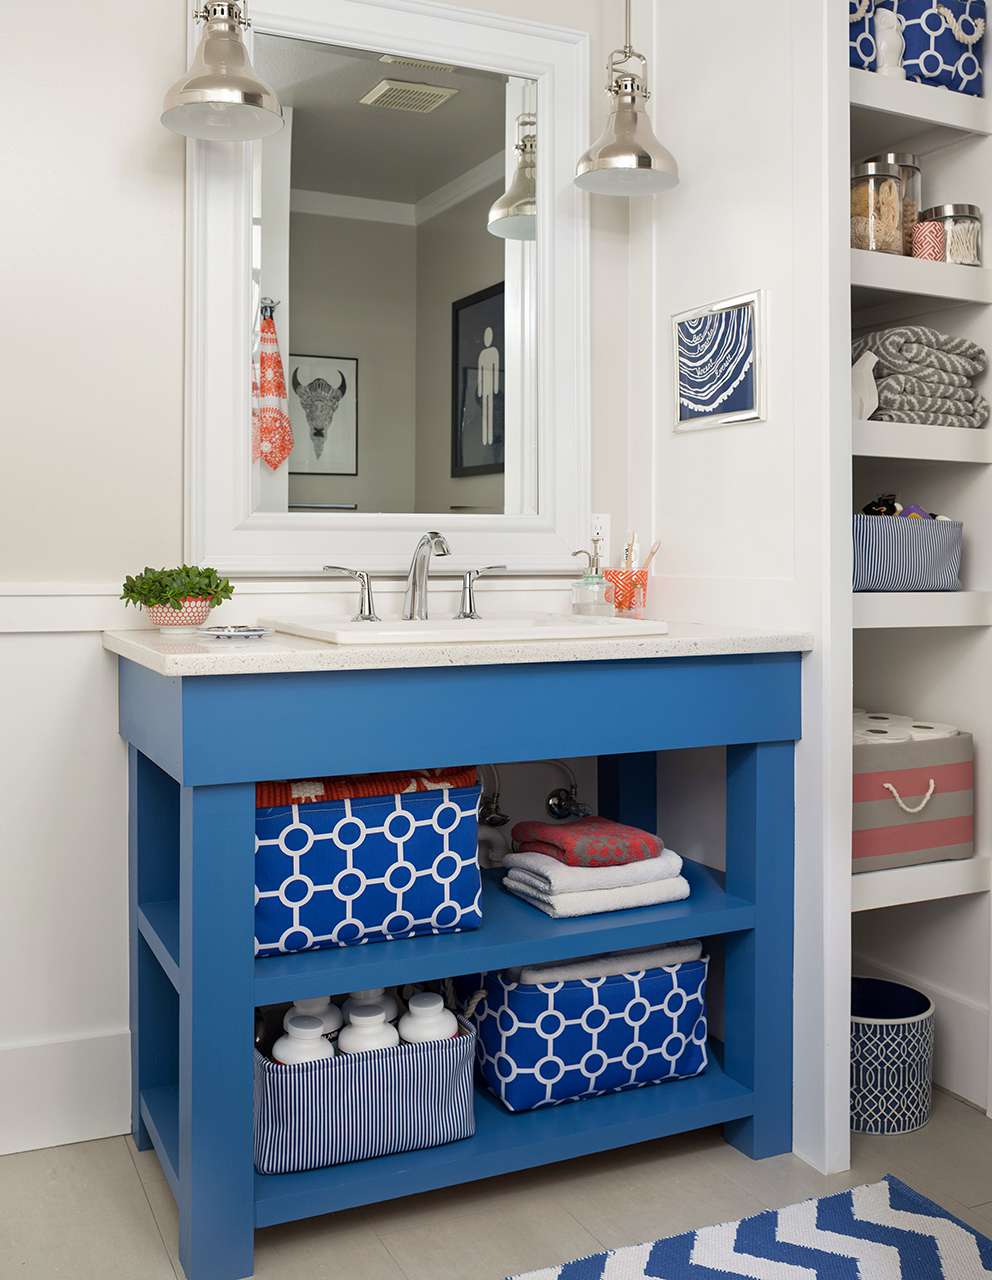 18 Diy Bathroom Vanity Ideas For Custom, How To Replace A Built In Bathroom Vanity